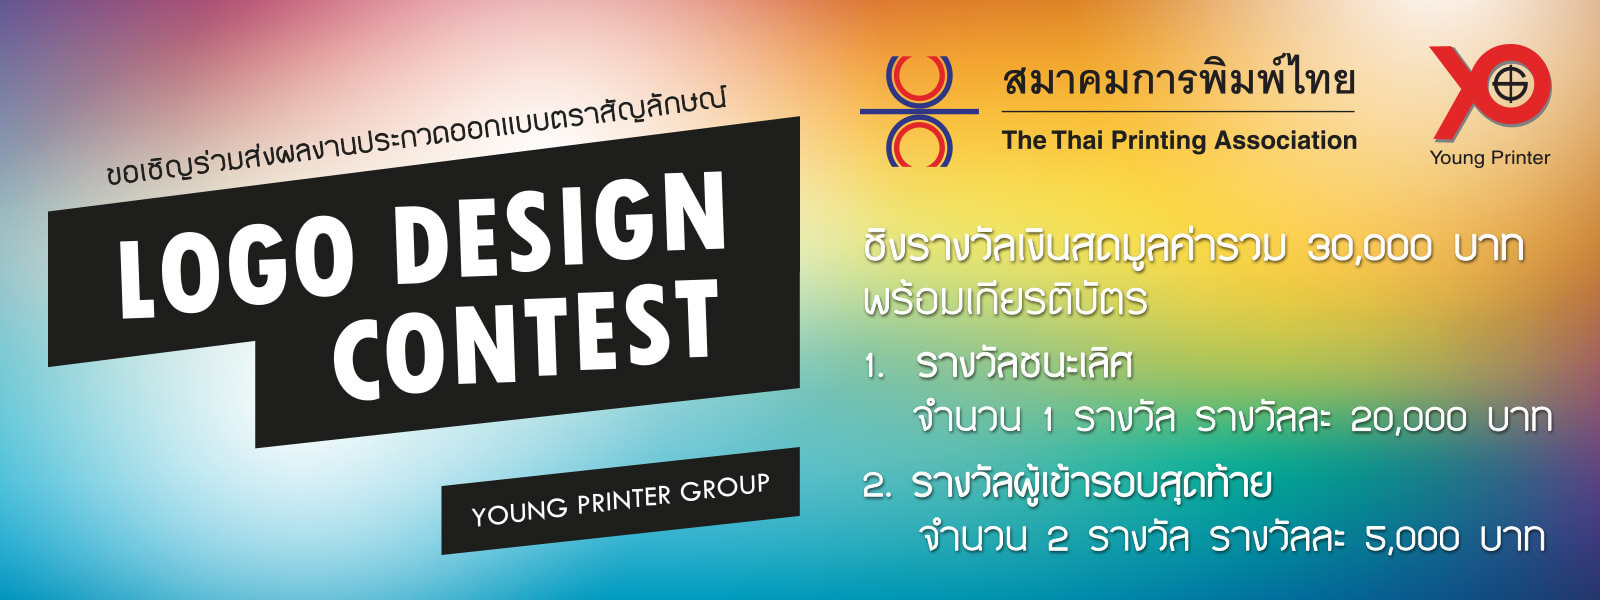 20181020_logo-contest-ypg_1600x600_01